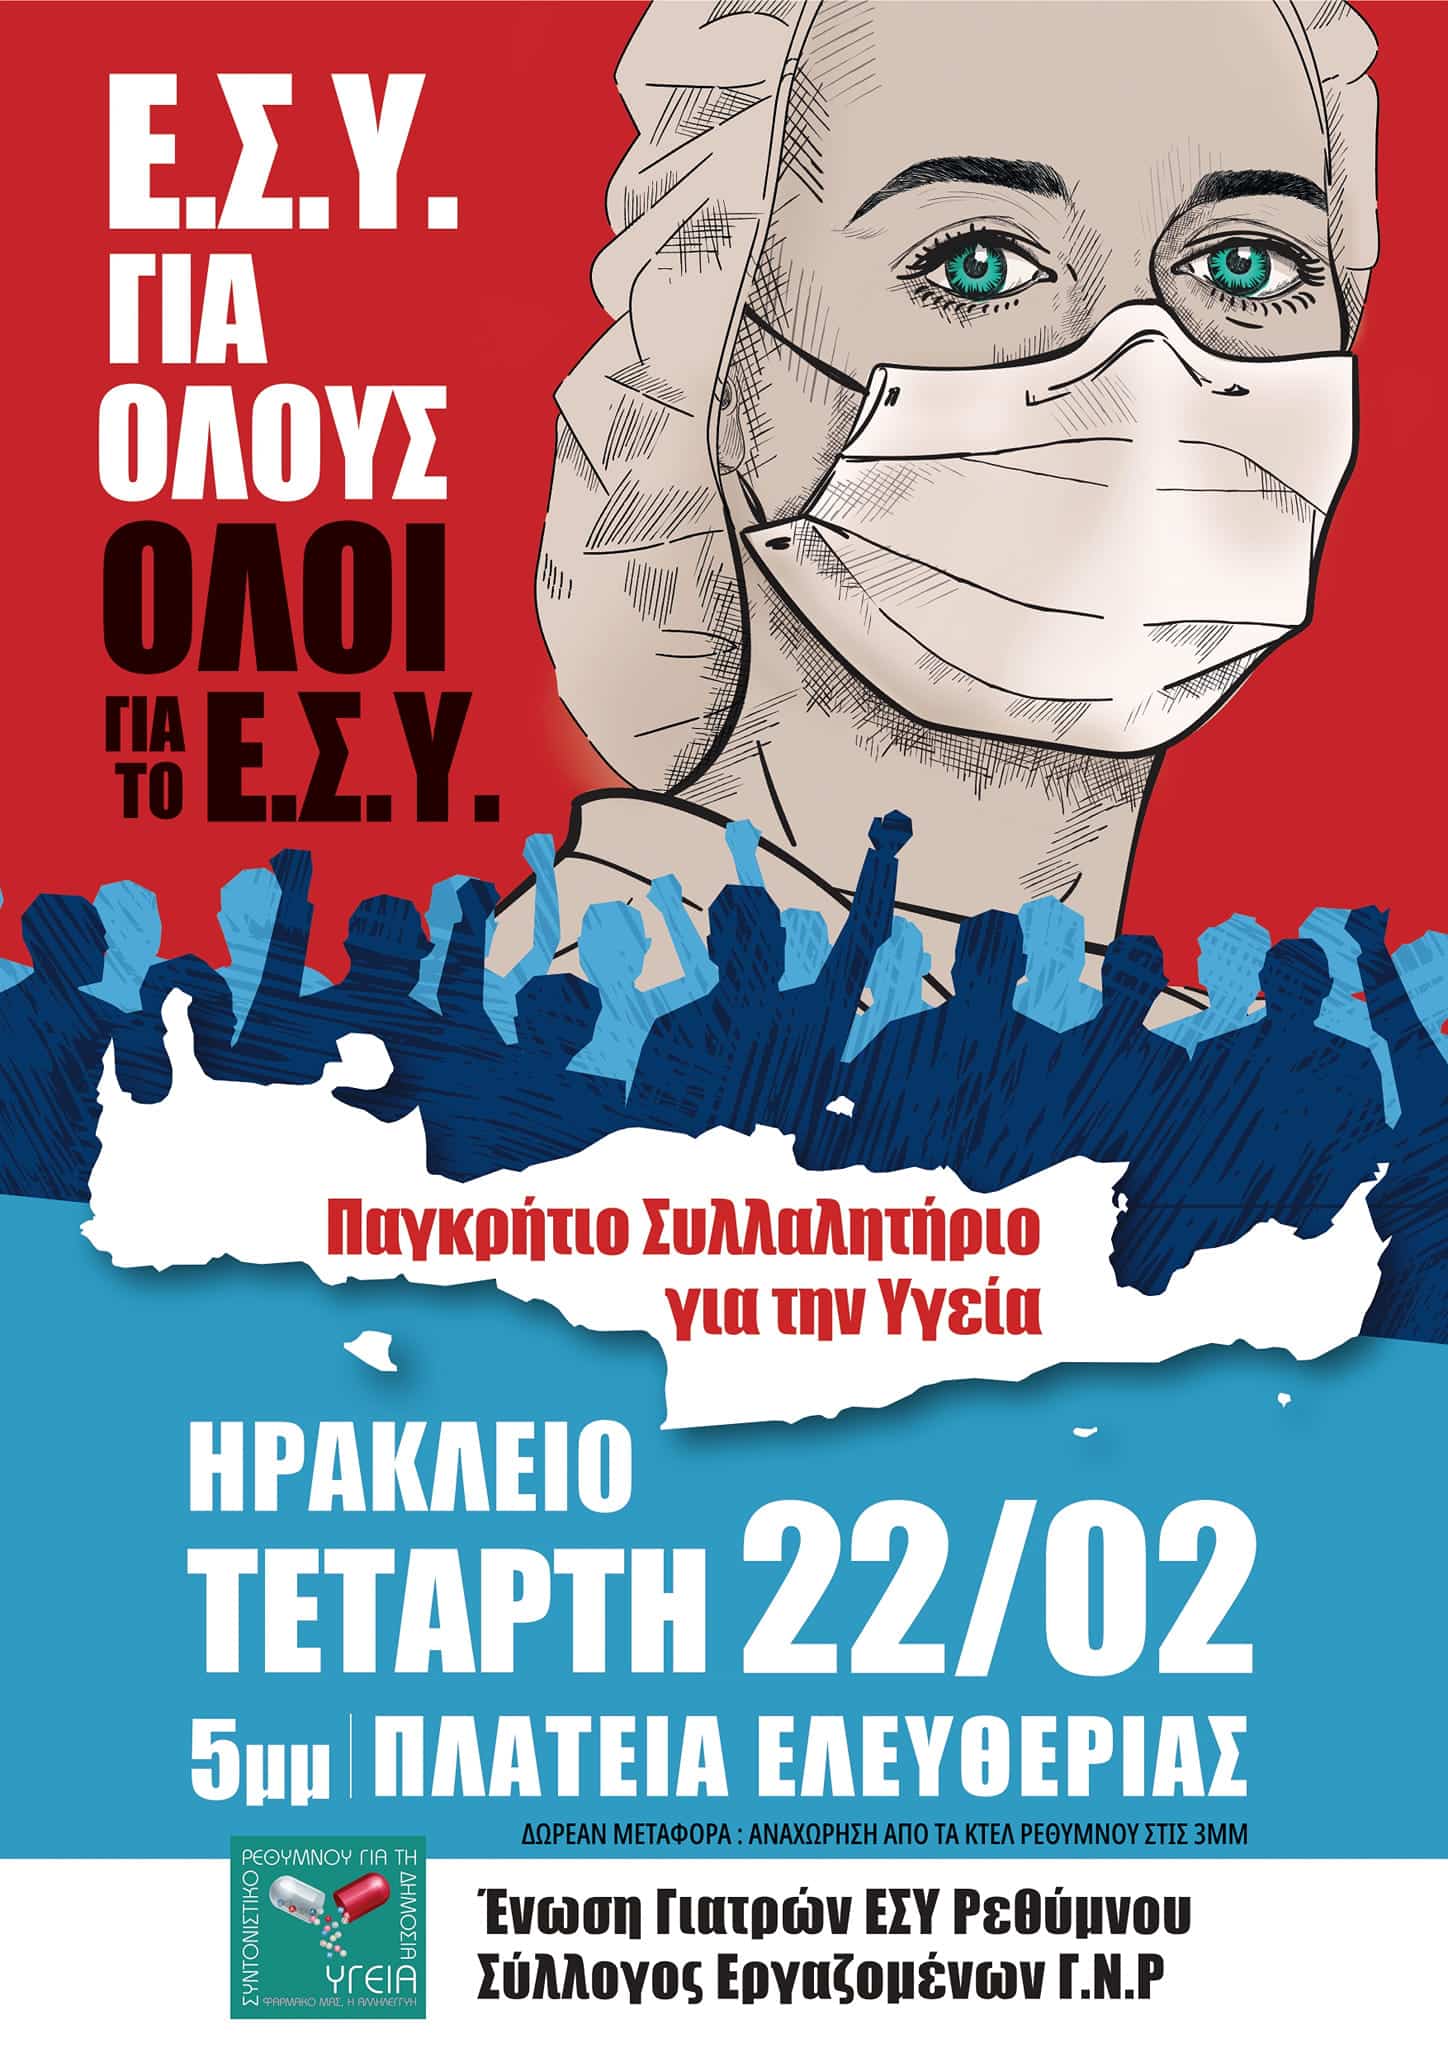 Παγκρήτιο Συλλαλητήριο για την Υγεία – Τετάρτη 22/2, 17.00, Πλατεία Ελευθερίας Ηράκλειο